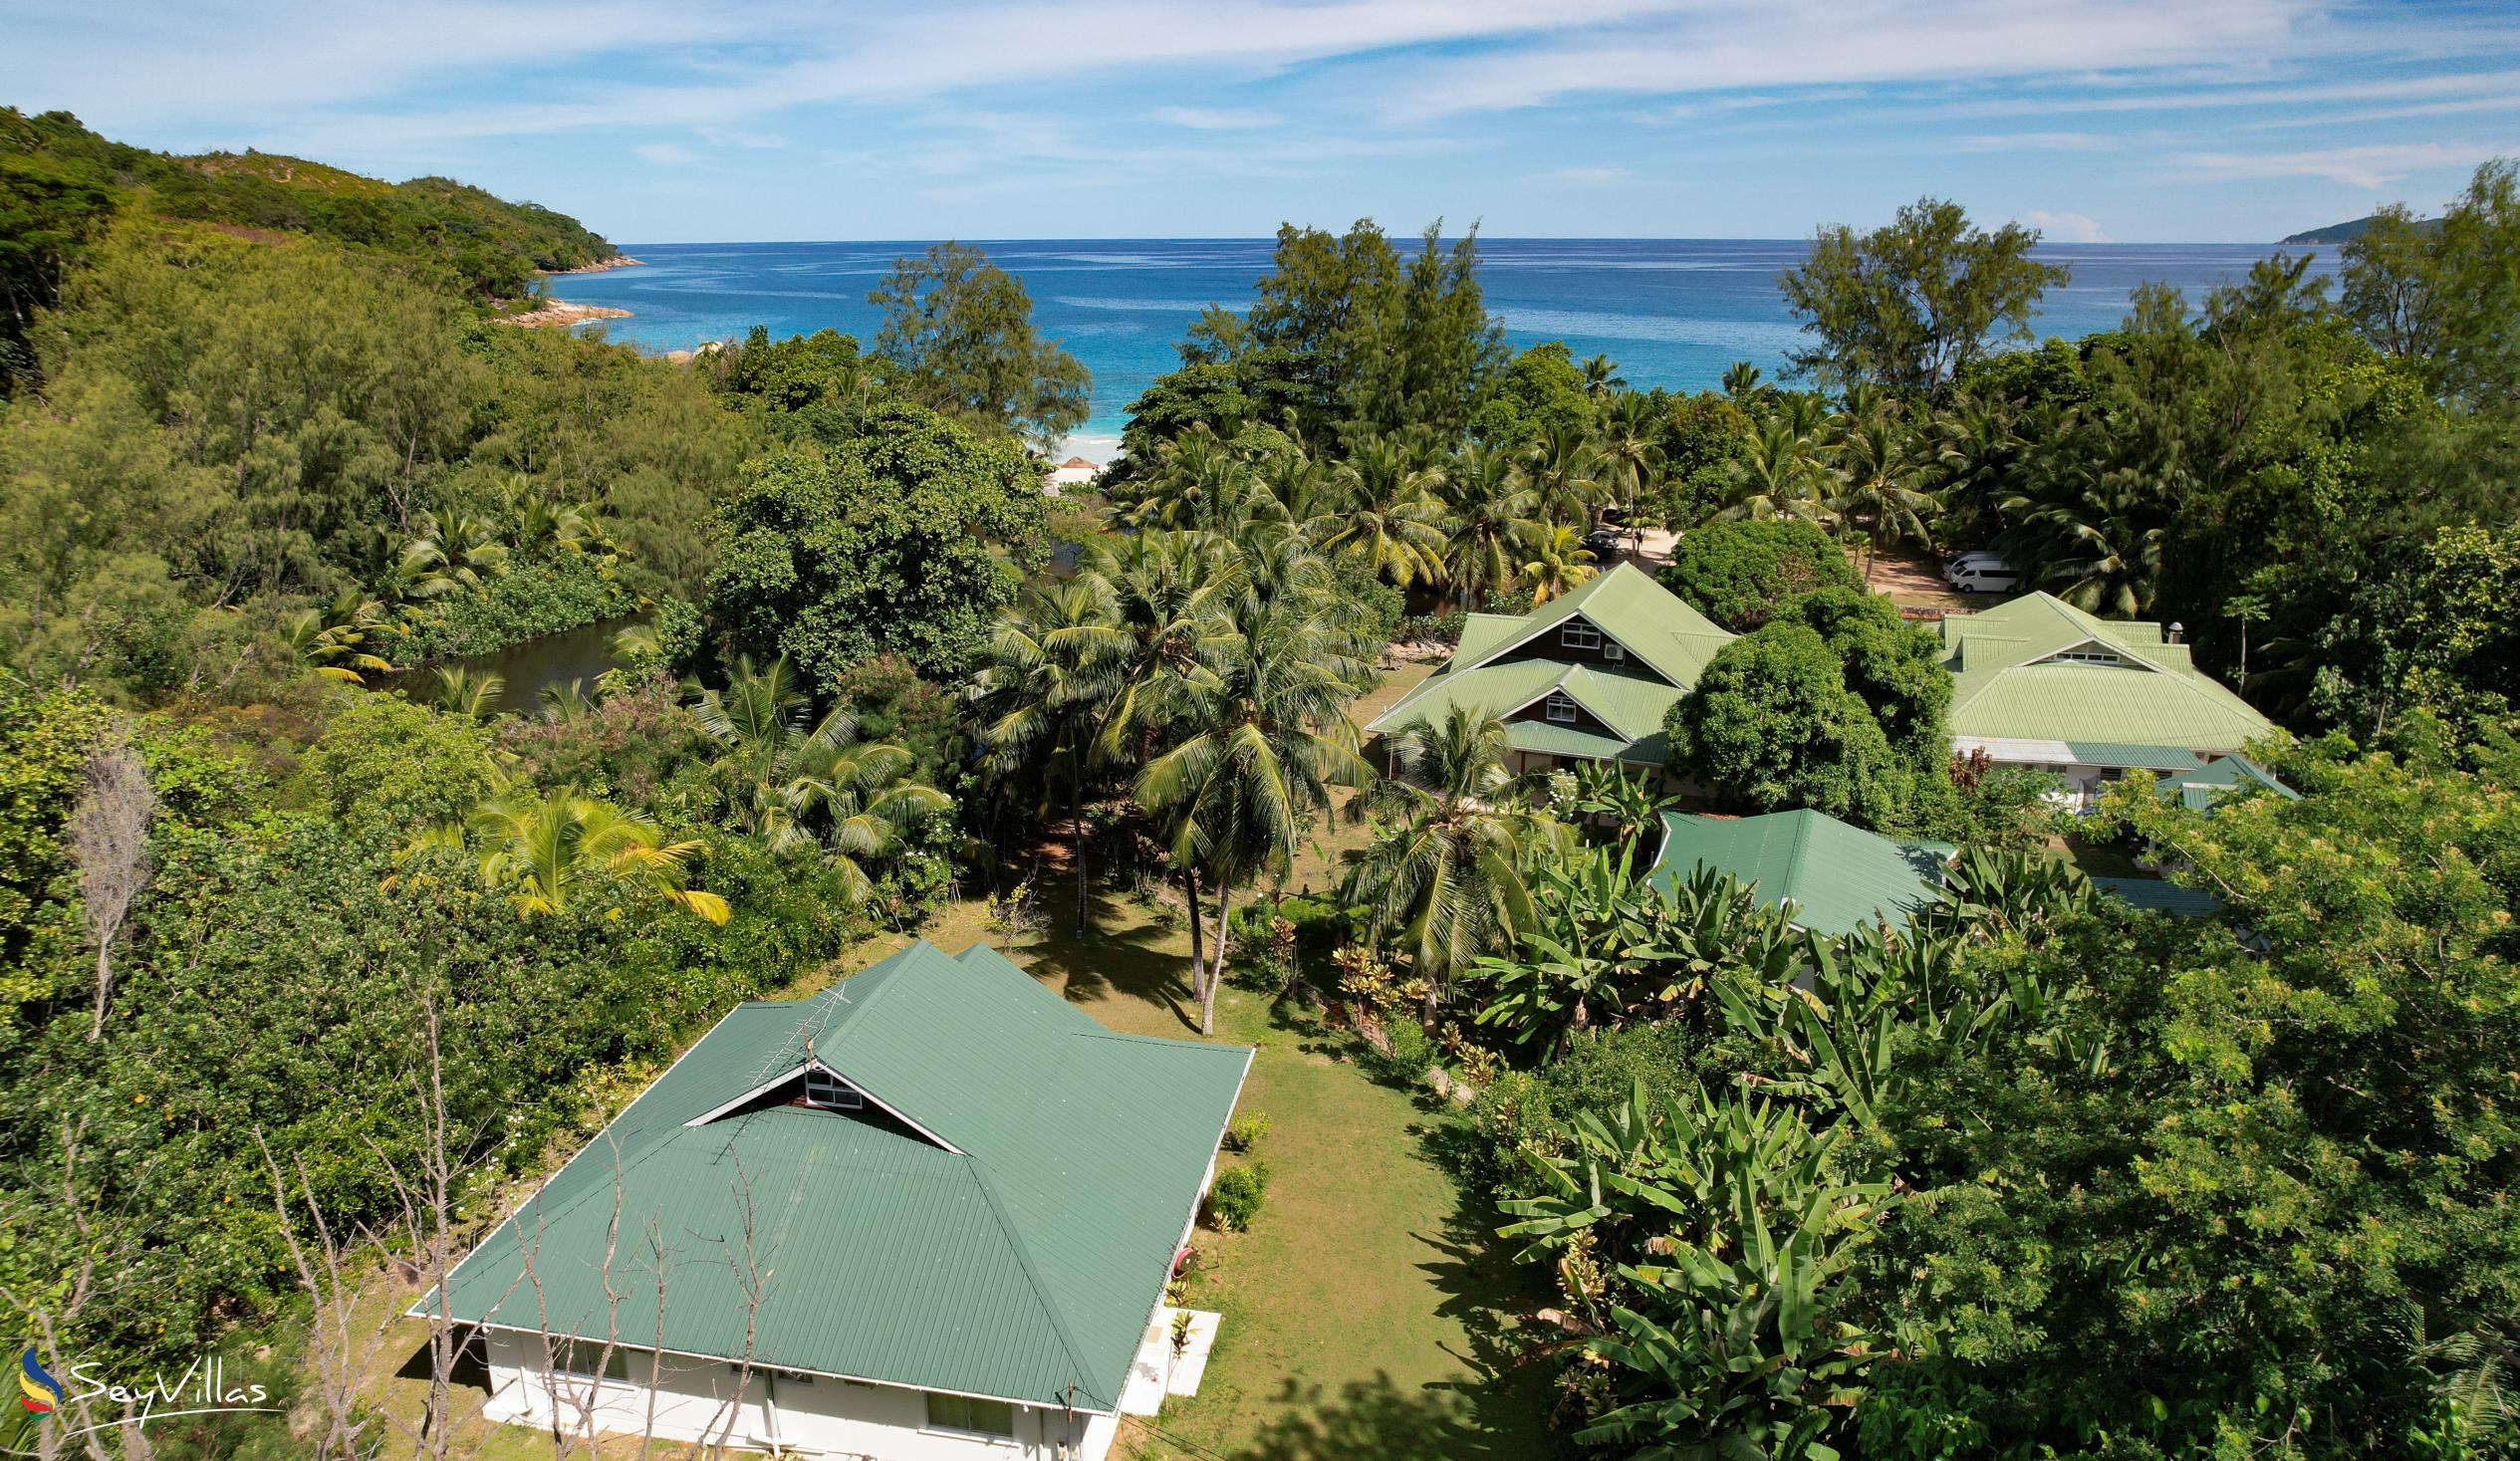 Foto 7: Le Chevalier Bay Guesthouse - Aussenbereich - Praslin (Seychellen)